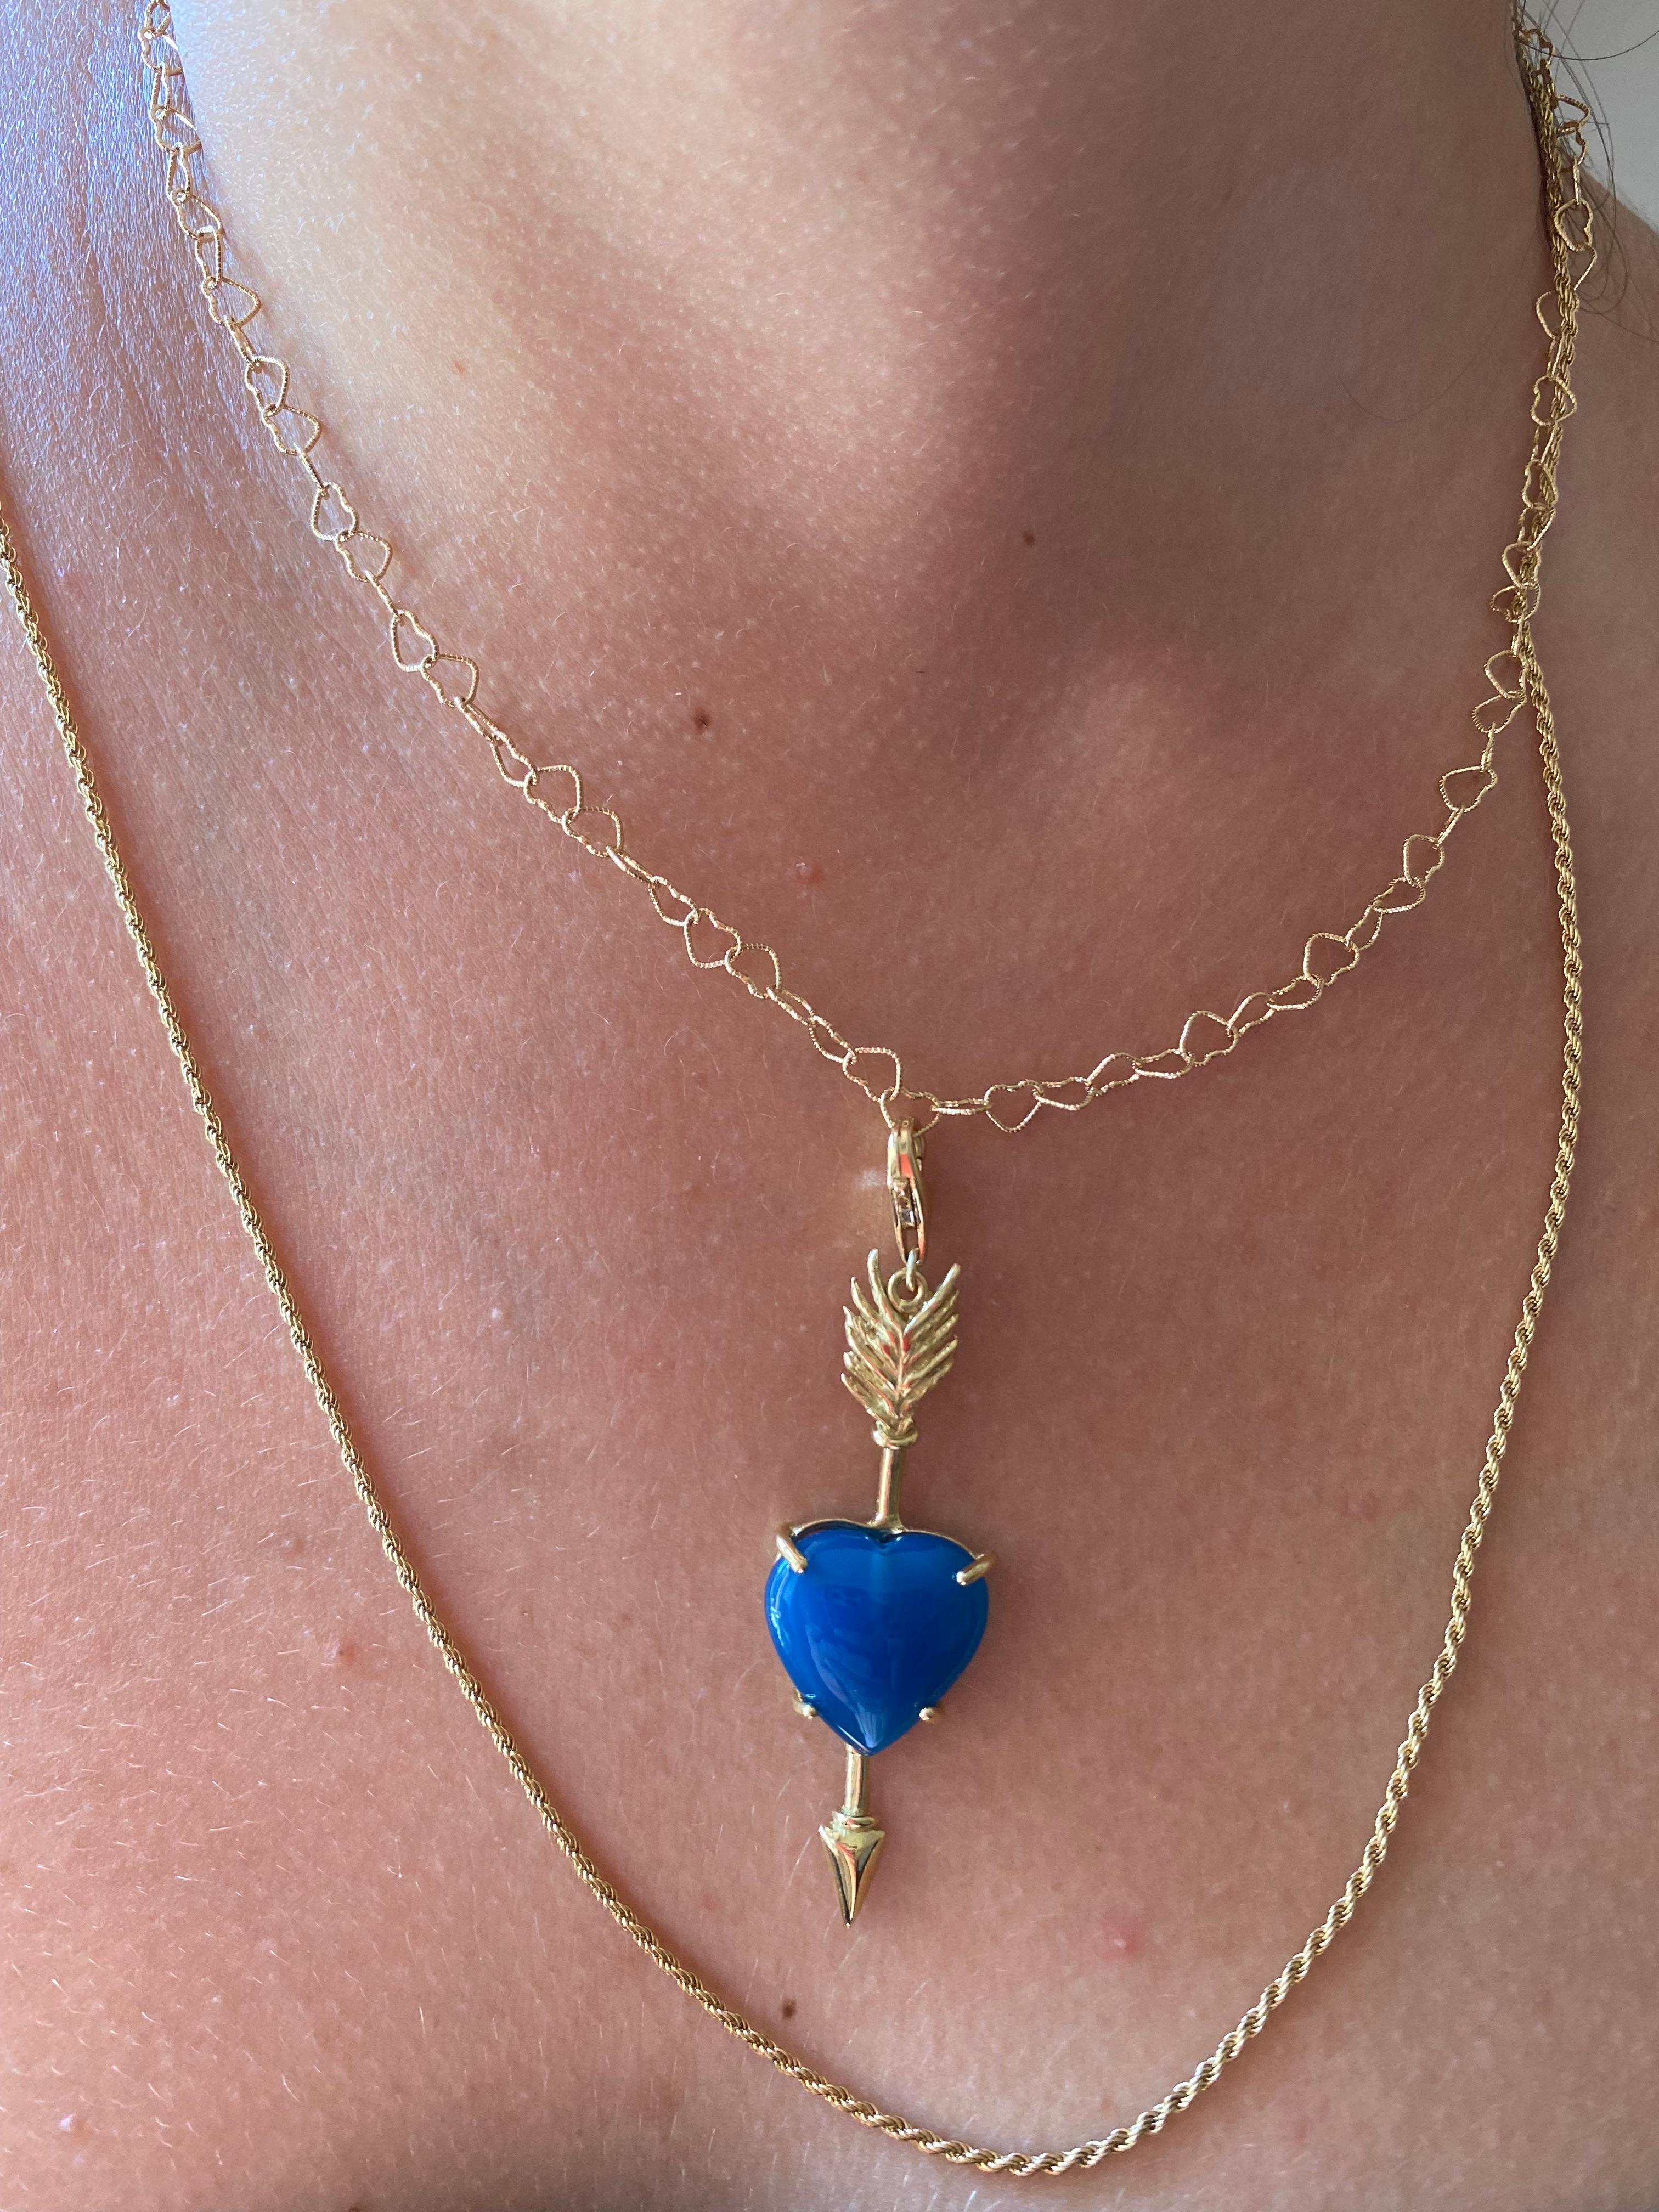  Collection Design Rossella Ugolini  un joli pendentif fabriqué à la main en or 18 carats et orné d'une belle agate bleu foncé en forme de cœur. Un cadeau d'amour ouvertement inspiré par la signification du cœur avec la flèche liée à l'amour,